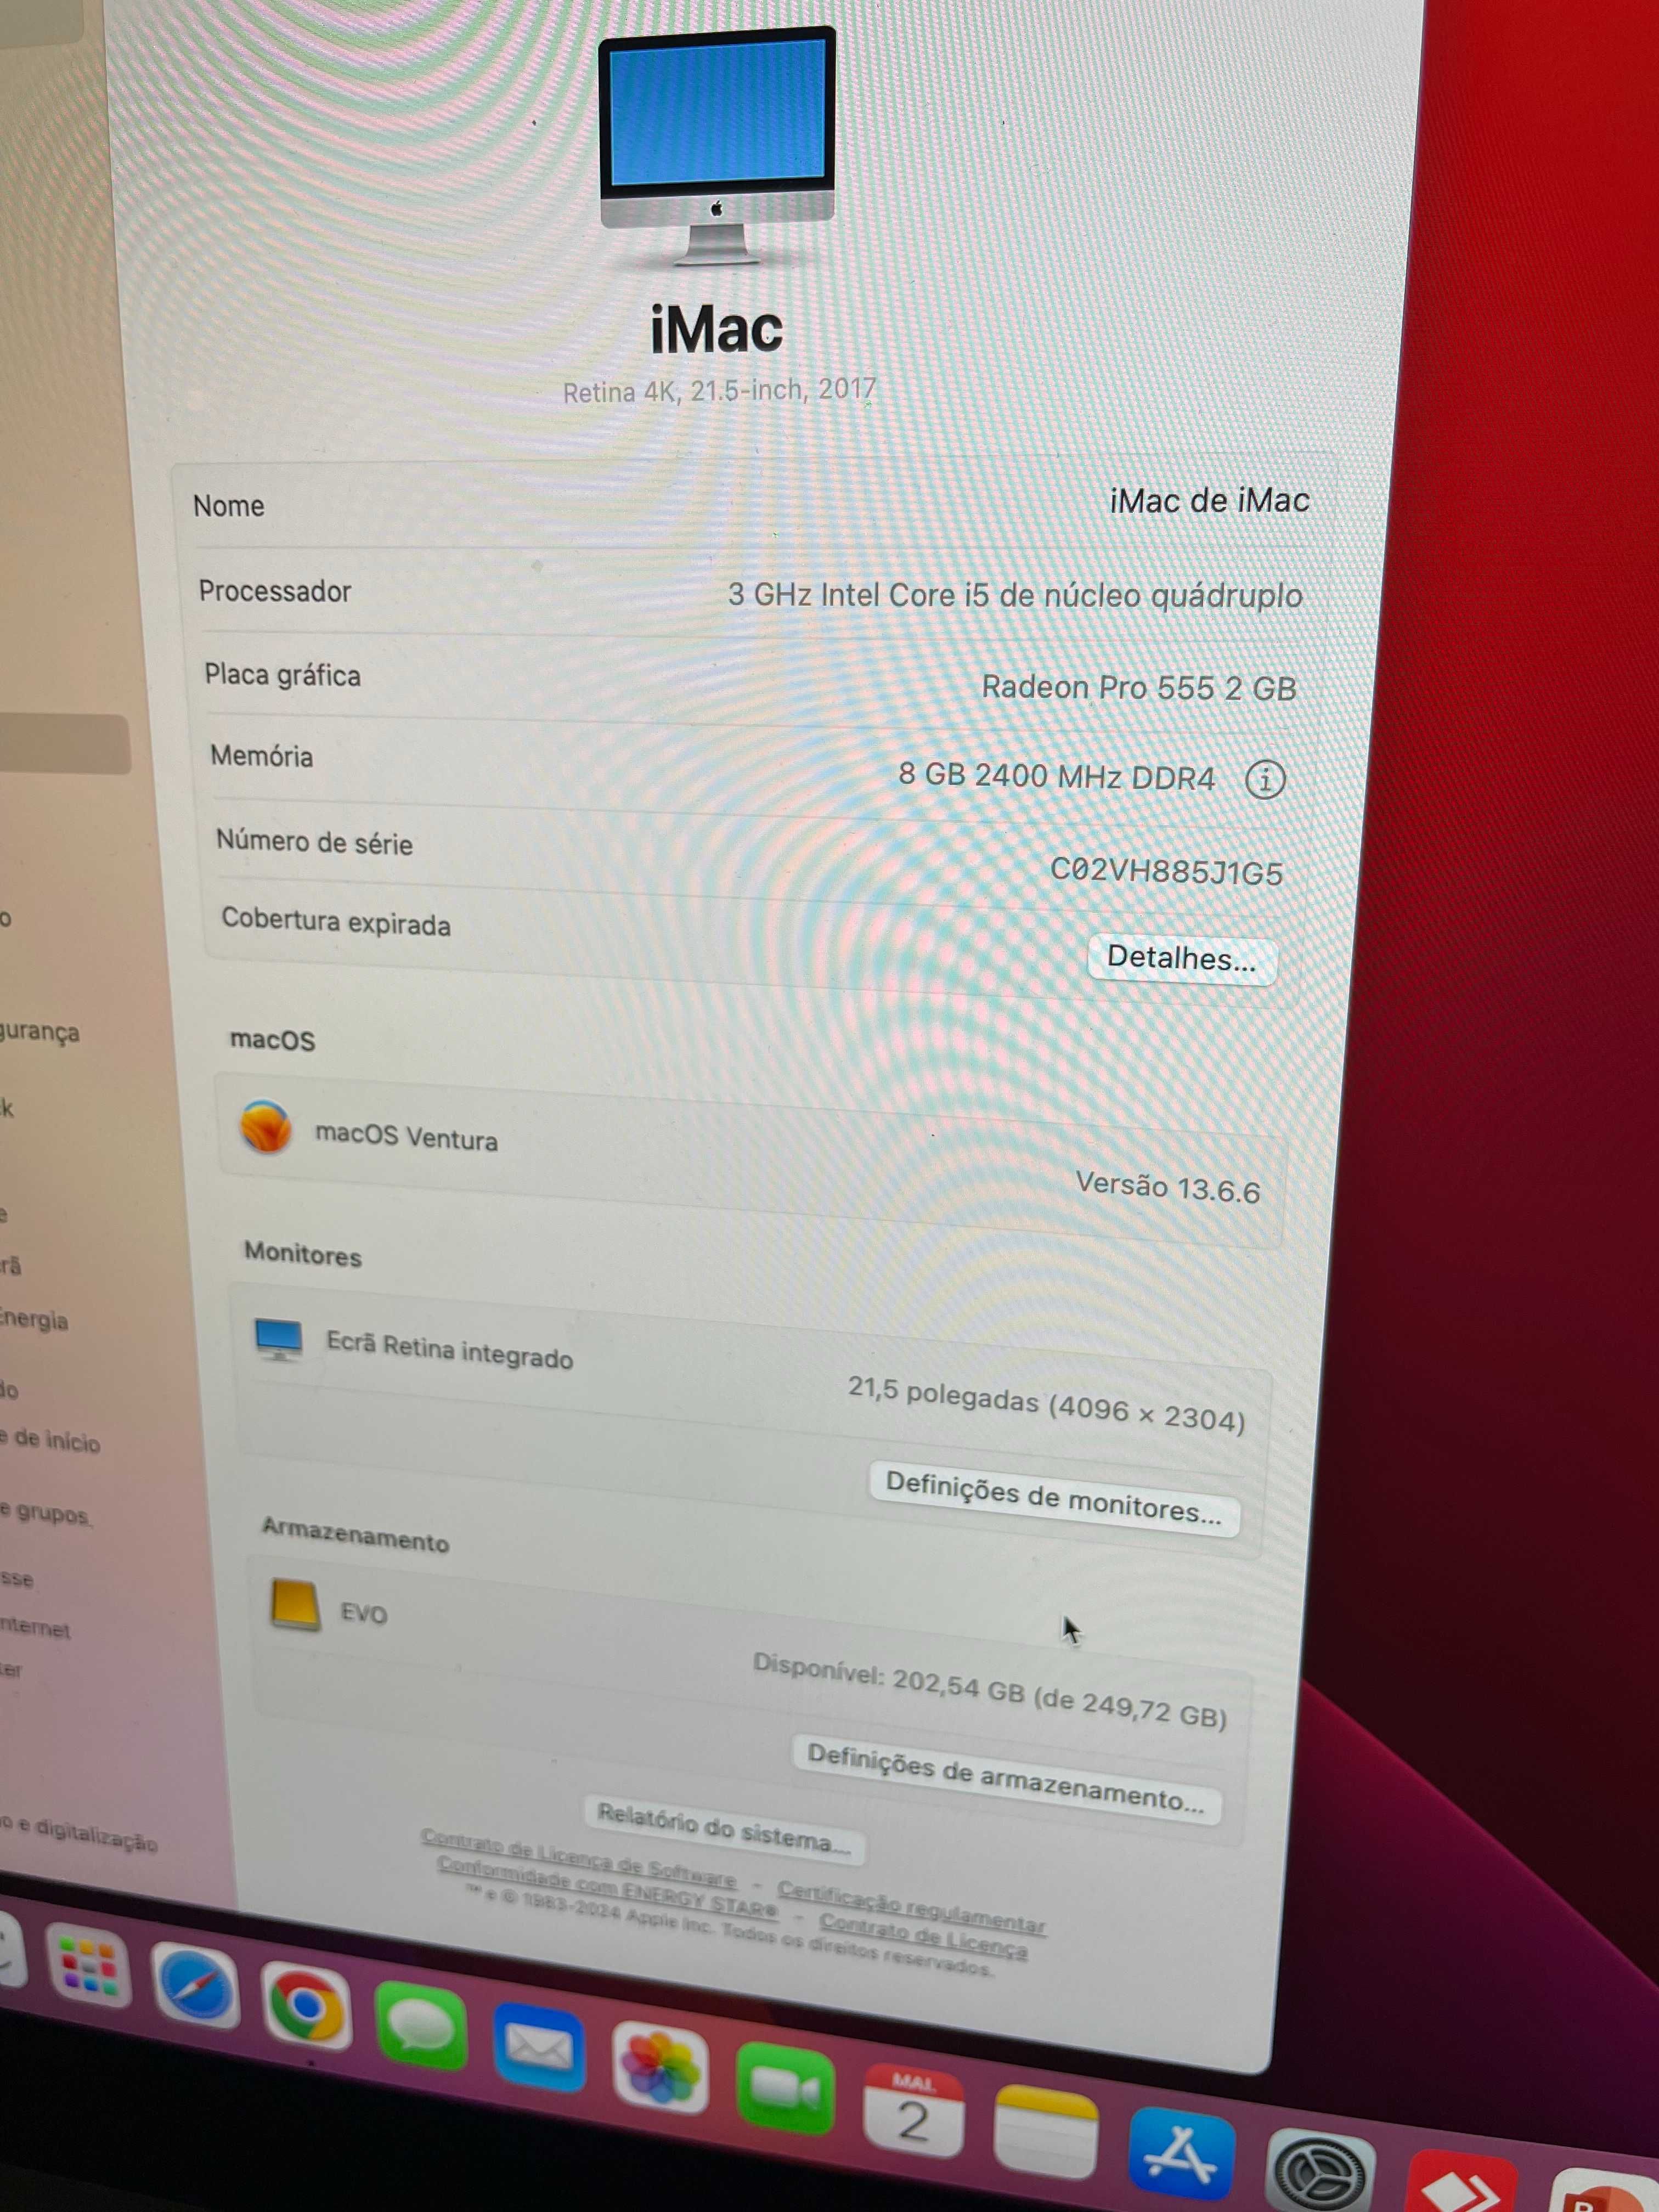 iMac Retina 4K 21.5" 2017 Intel i5, 8GB, 256GB SSD Evo 1TB  Radeon Pro